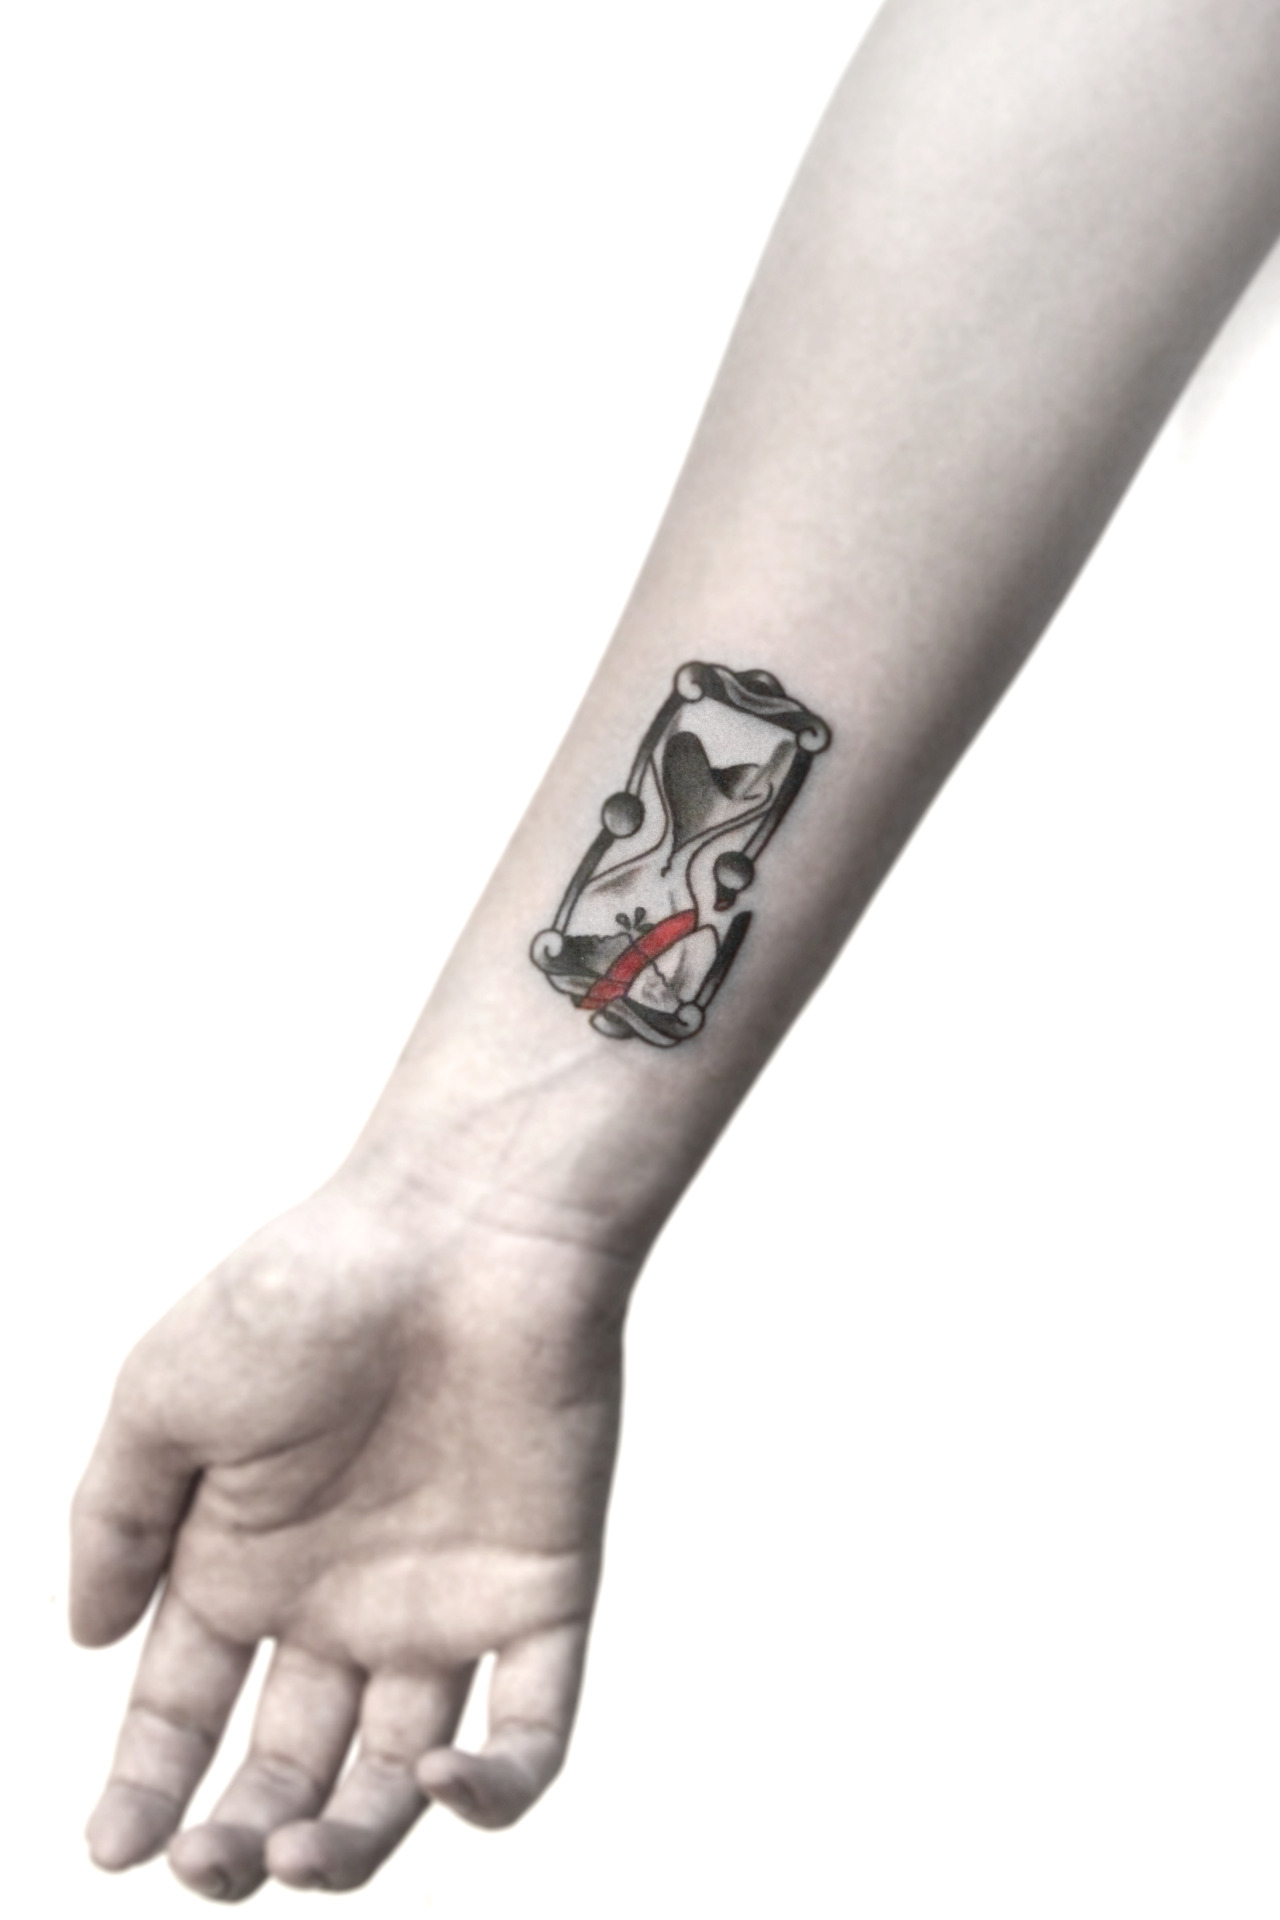 24 Hourglass Tattoo Ideas  Tattoo Joker